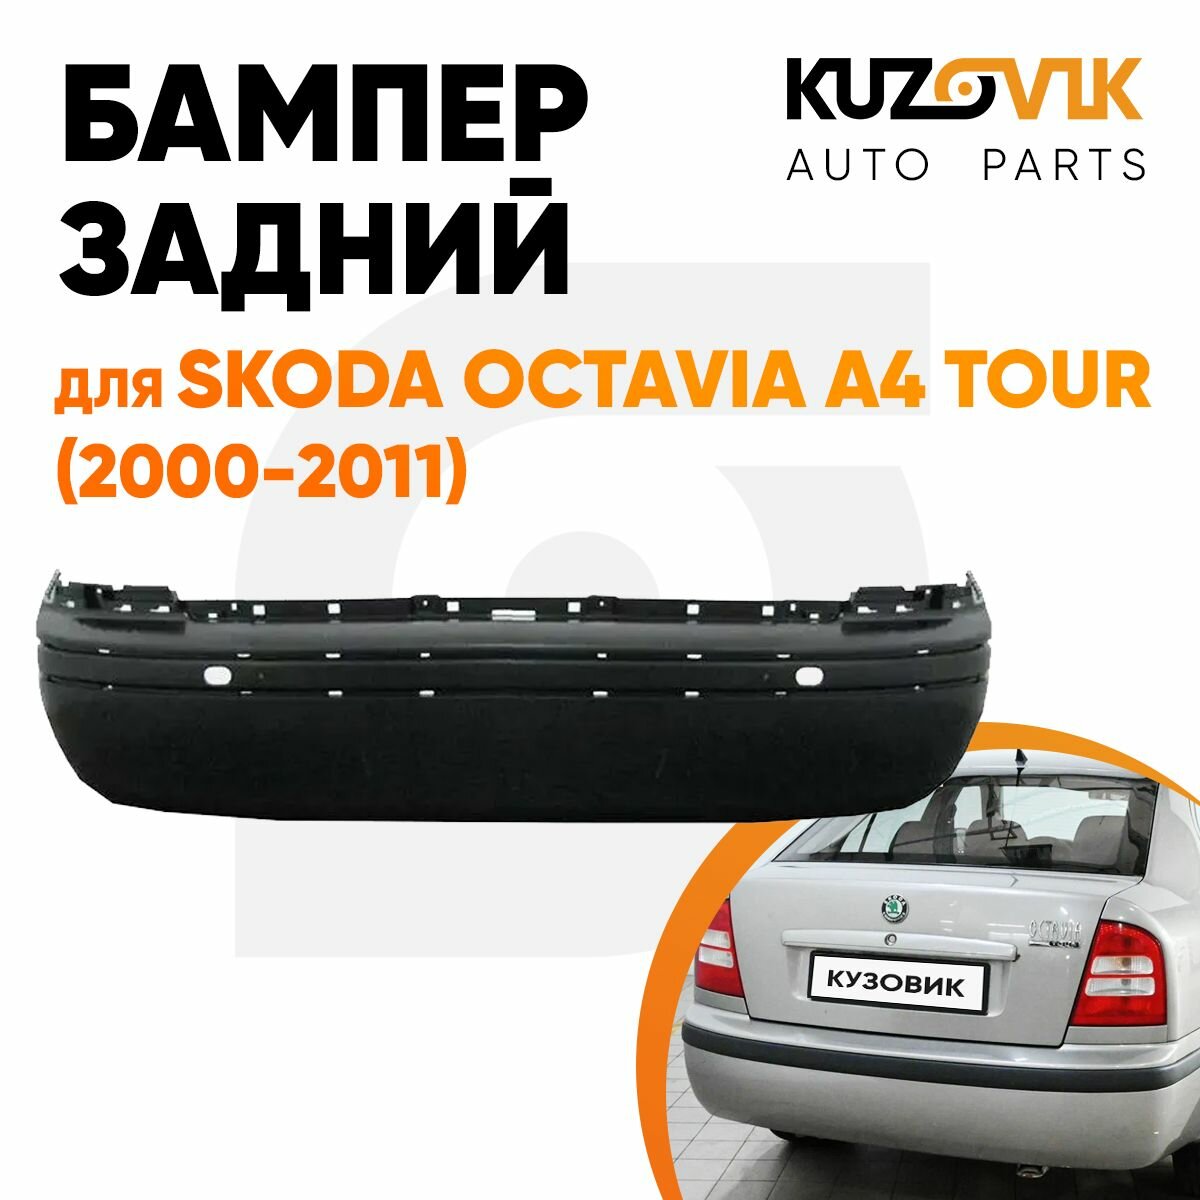 Бампер задний для Шкода Октавия А4 Тур Skoda Octavia A4 Tour (2000-2011)